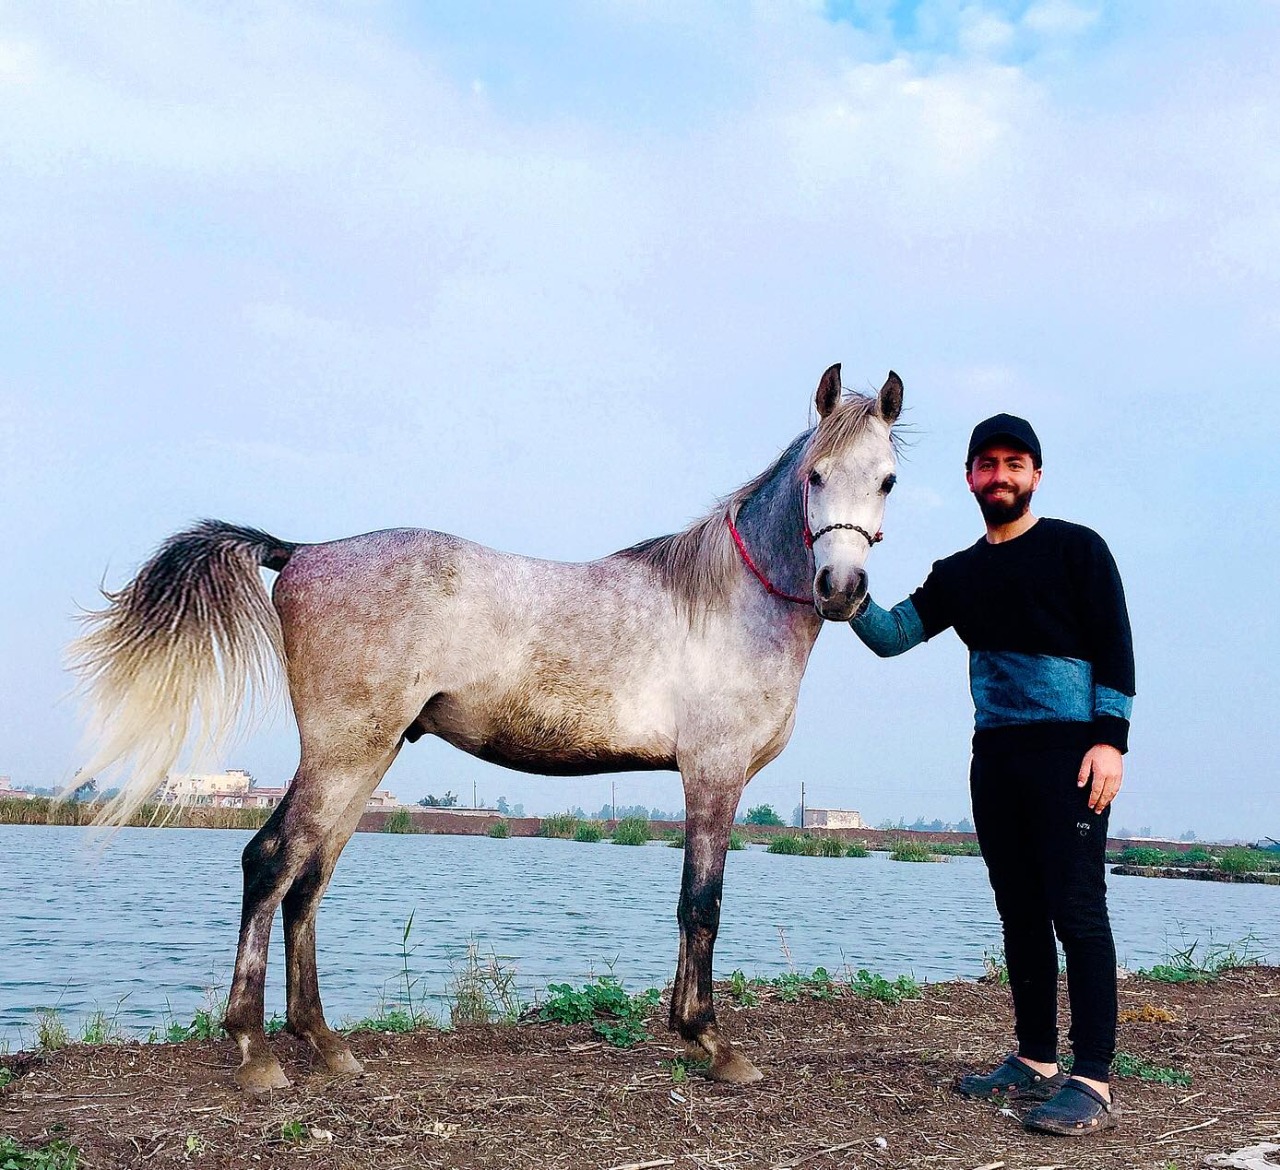 بالفيديو والصور.. عرض الحصان "فخر العمر" للبيع في كفر الشيخ.. تعرف على السعر النهائي